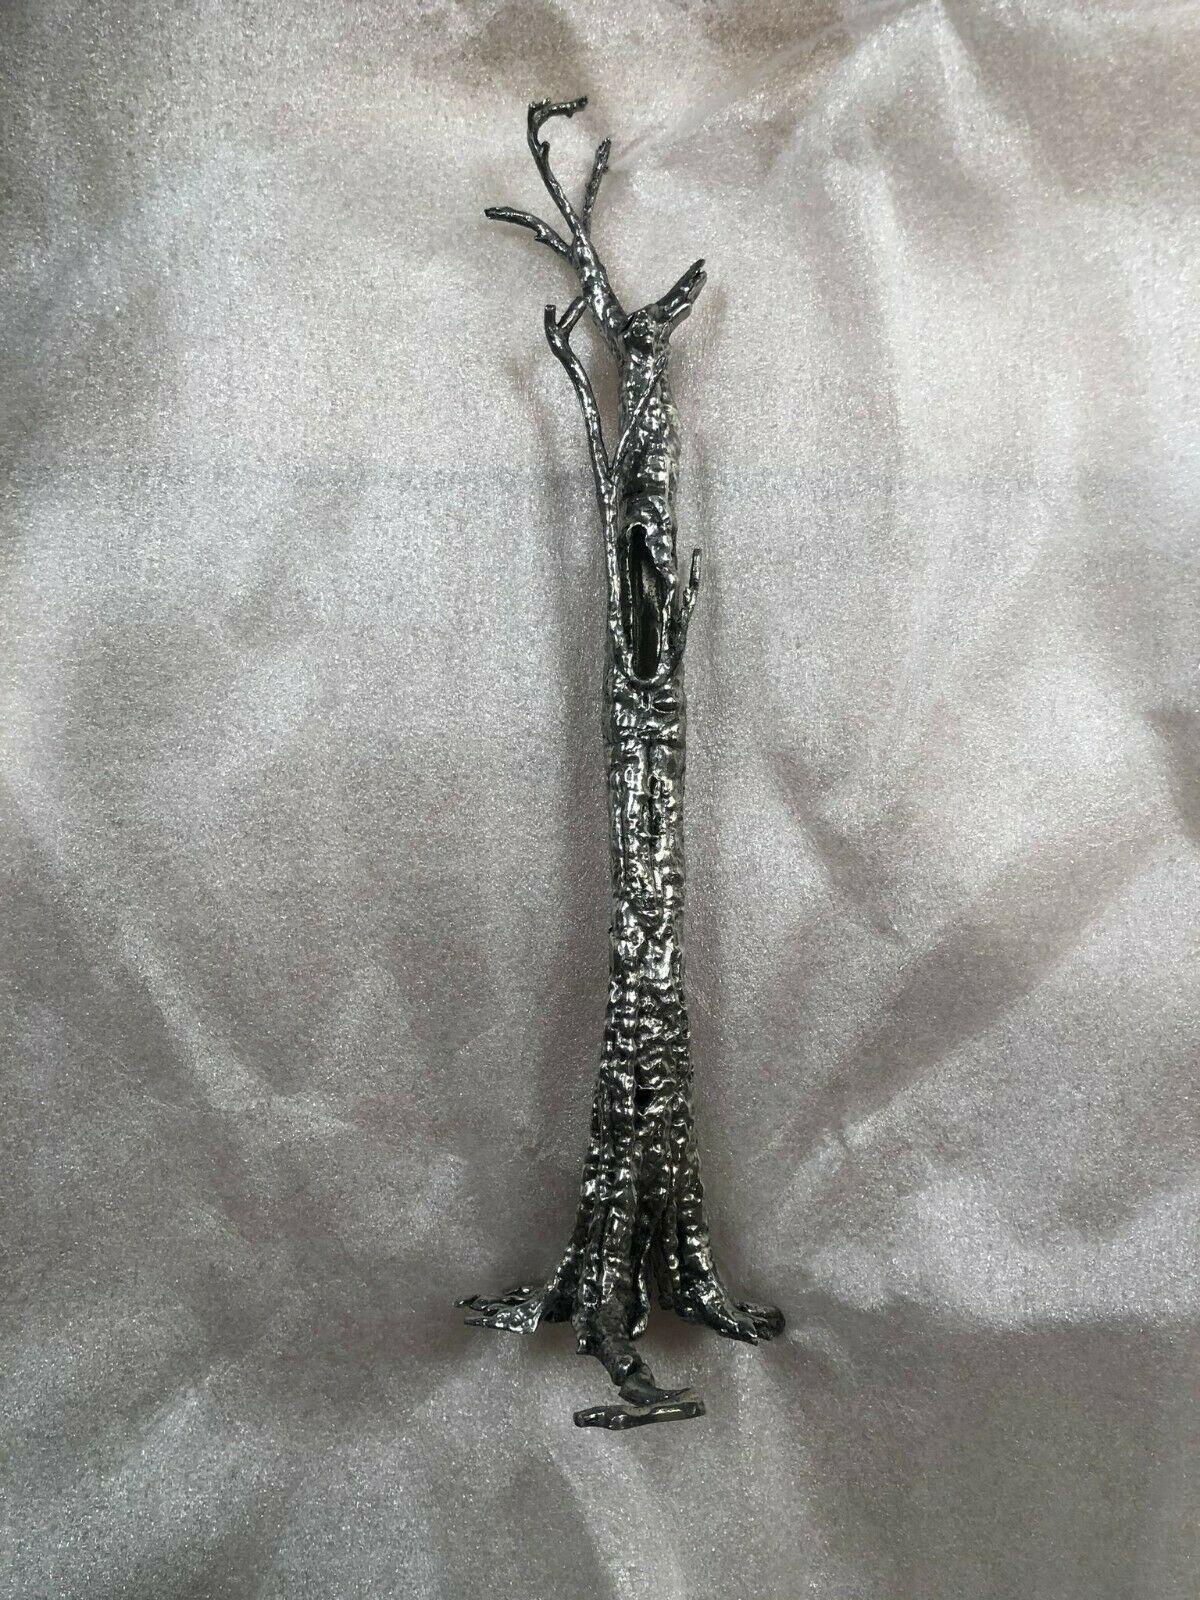 Pequi Tree Miniature ist eine Skulptur, die auf der Grundlage des jüngsten Werks von Ai Weiwei, Pequi Tree, 2018-2020, im Maßstab 1:100 hergestellt wurde.

Bei der Skulptur handelt es sich um eine auf 250 Exemplare limitierte, nummerierte und von Ai